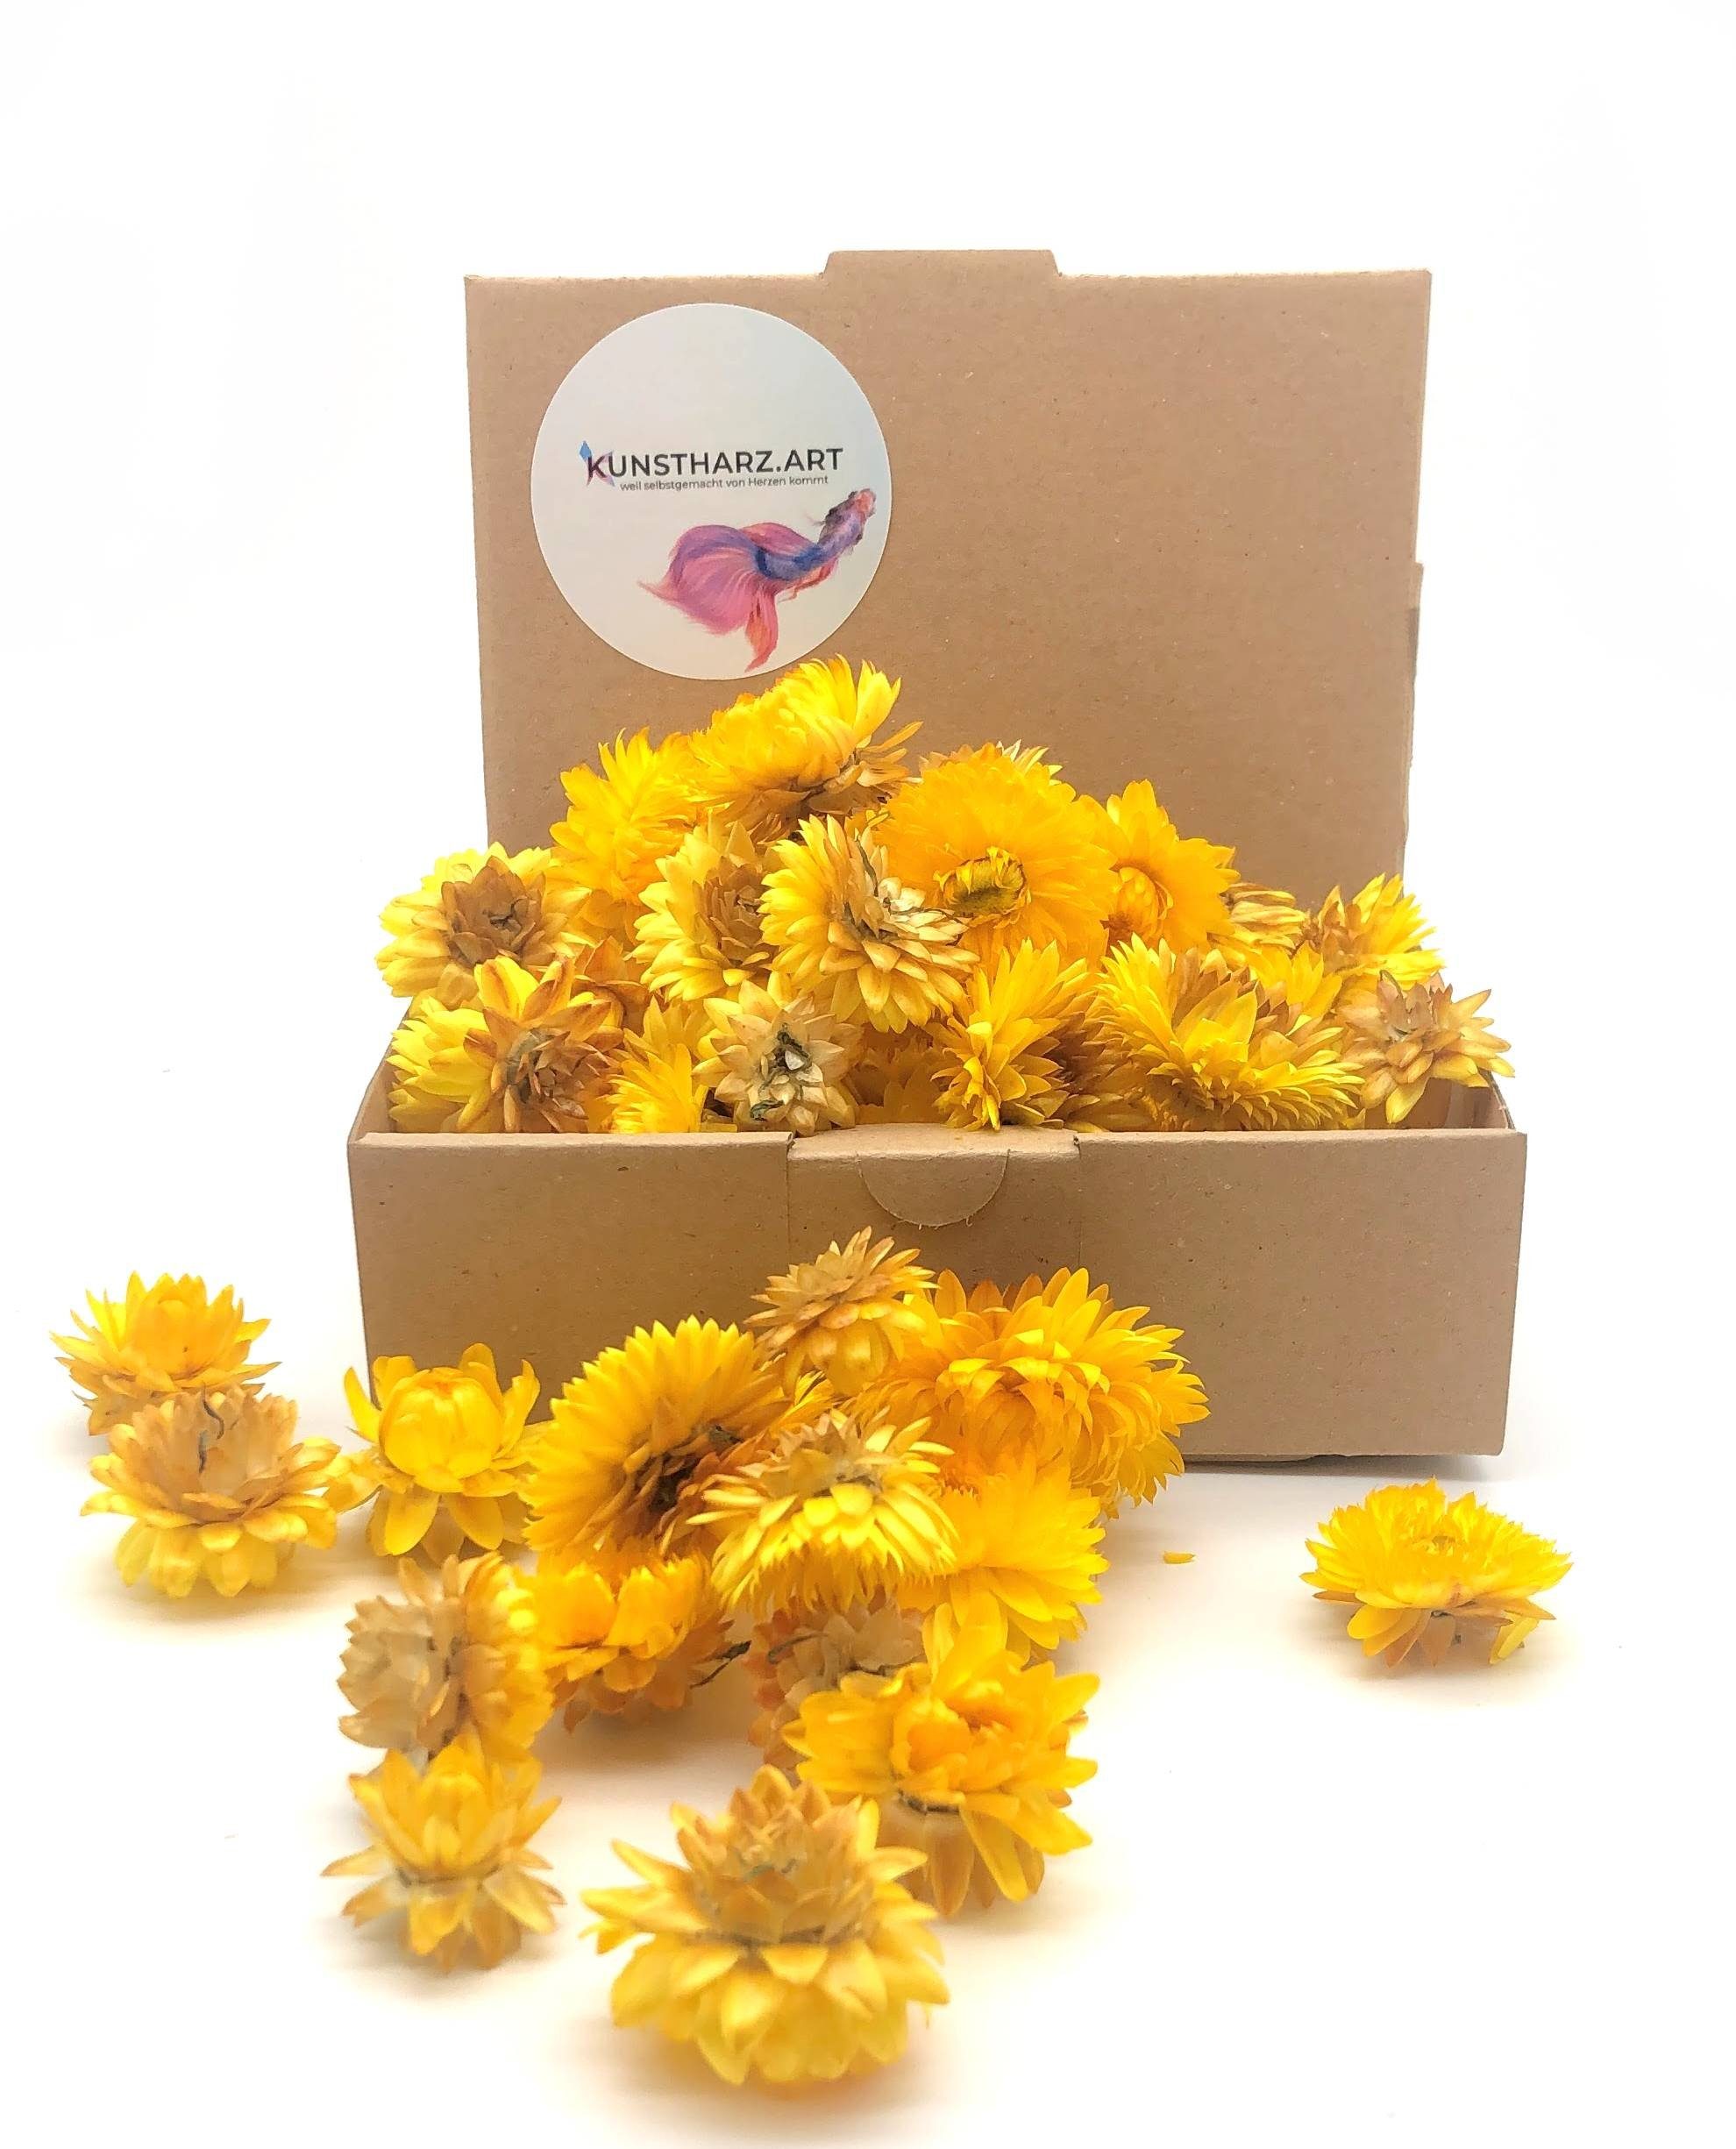 Trockenblume Strohblumenköpfe Helichrysum getrocknet: gemischt oder farblich sortiert - Gelb, Kunstharz.Art